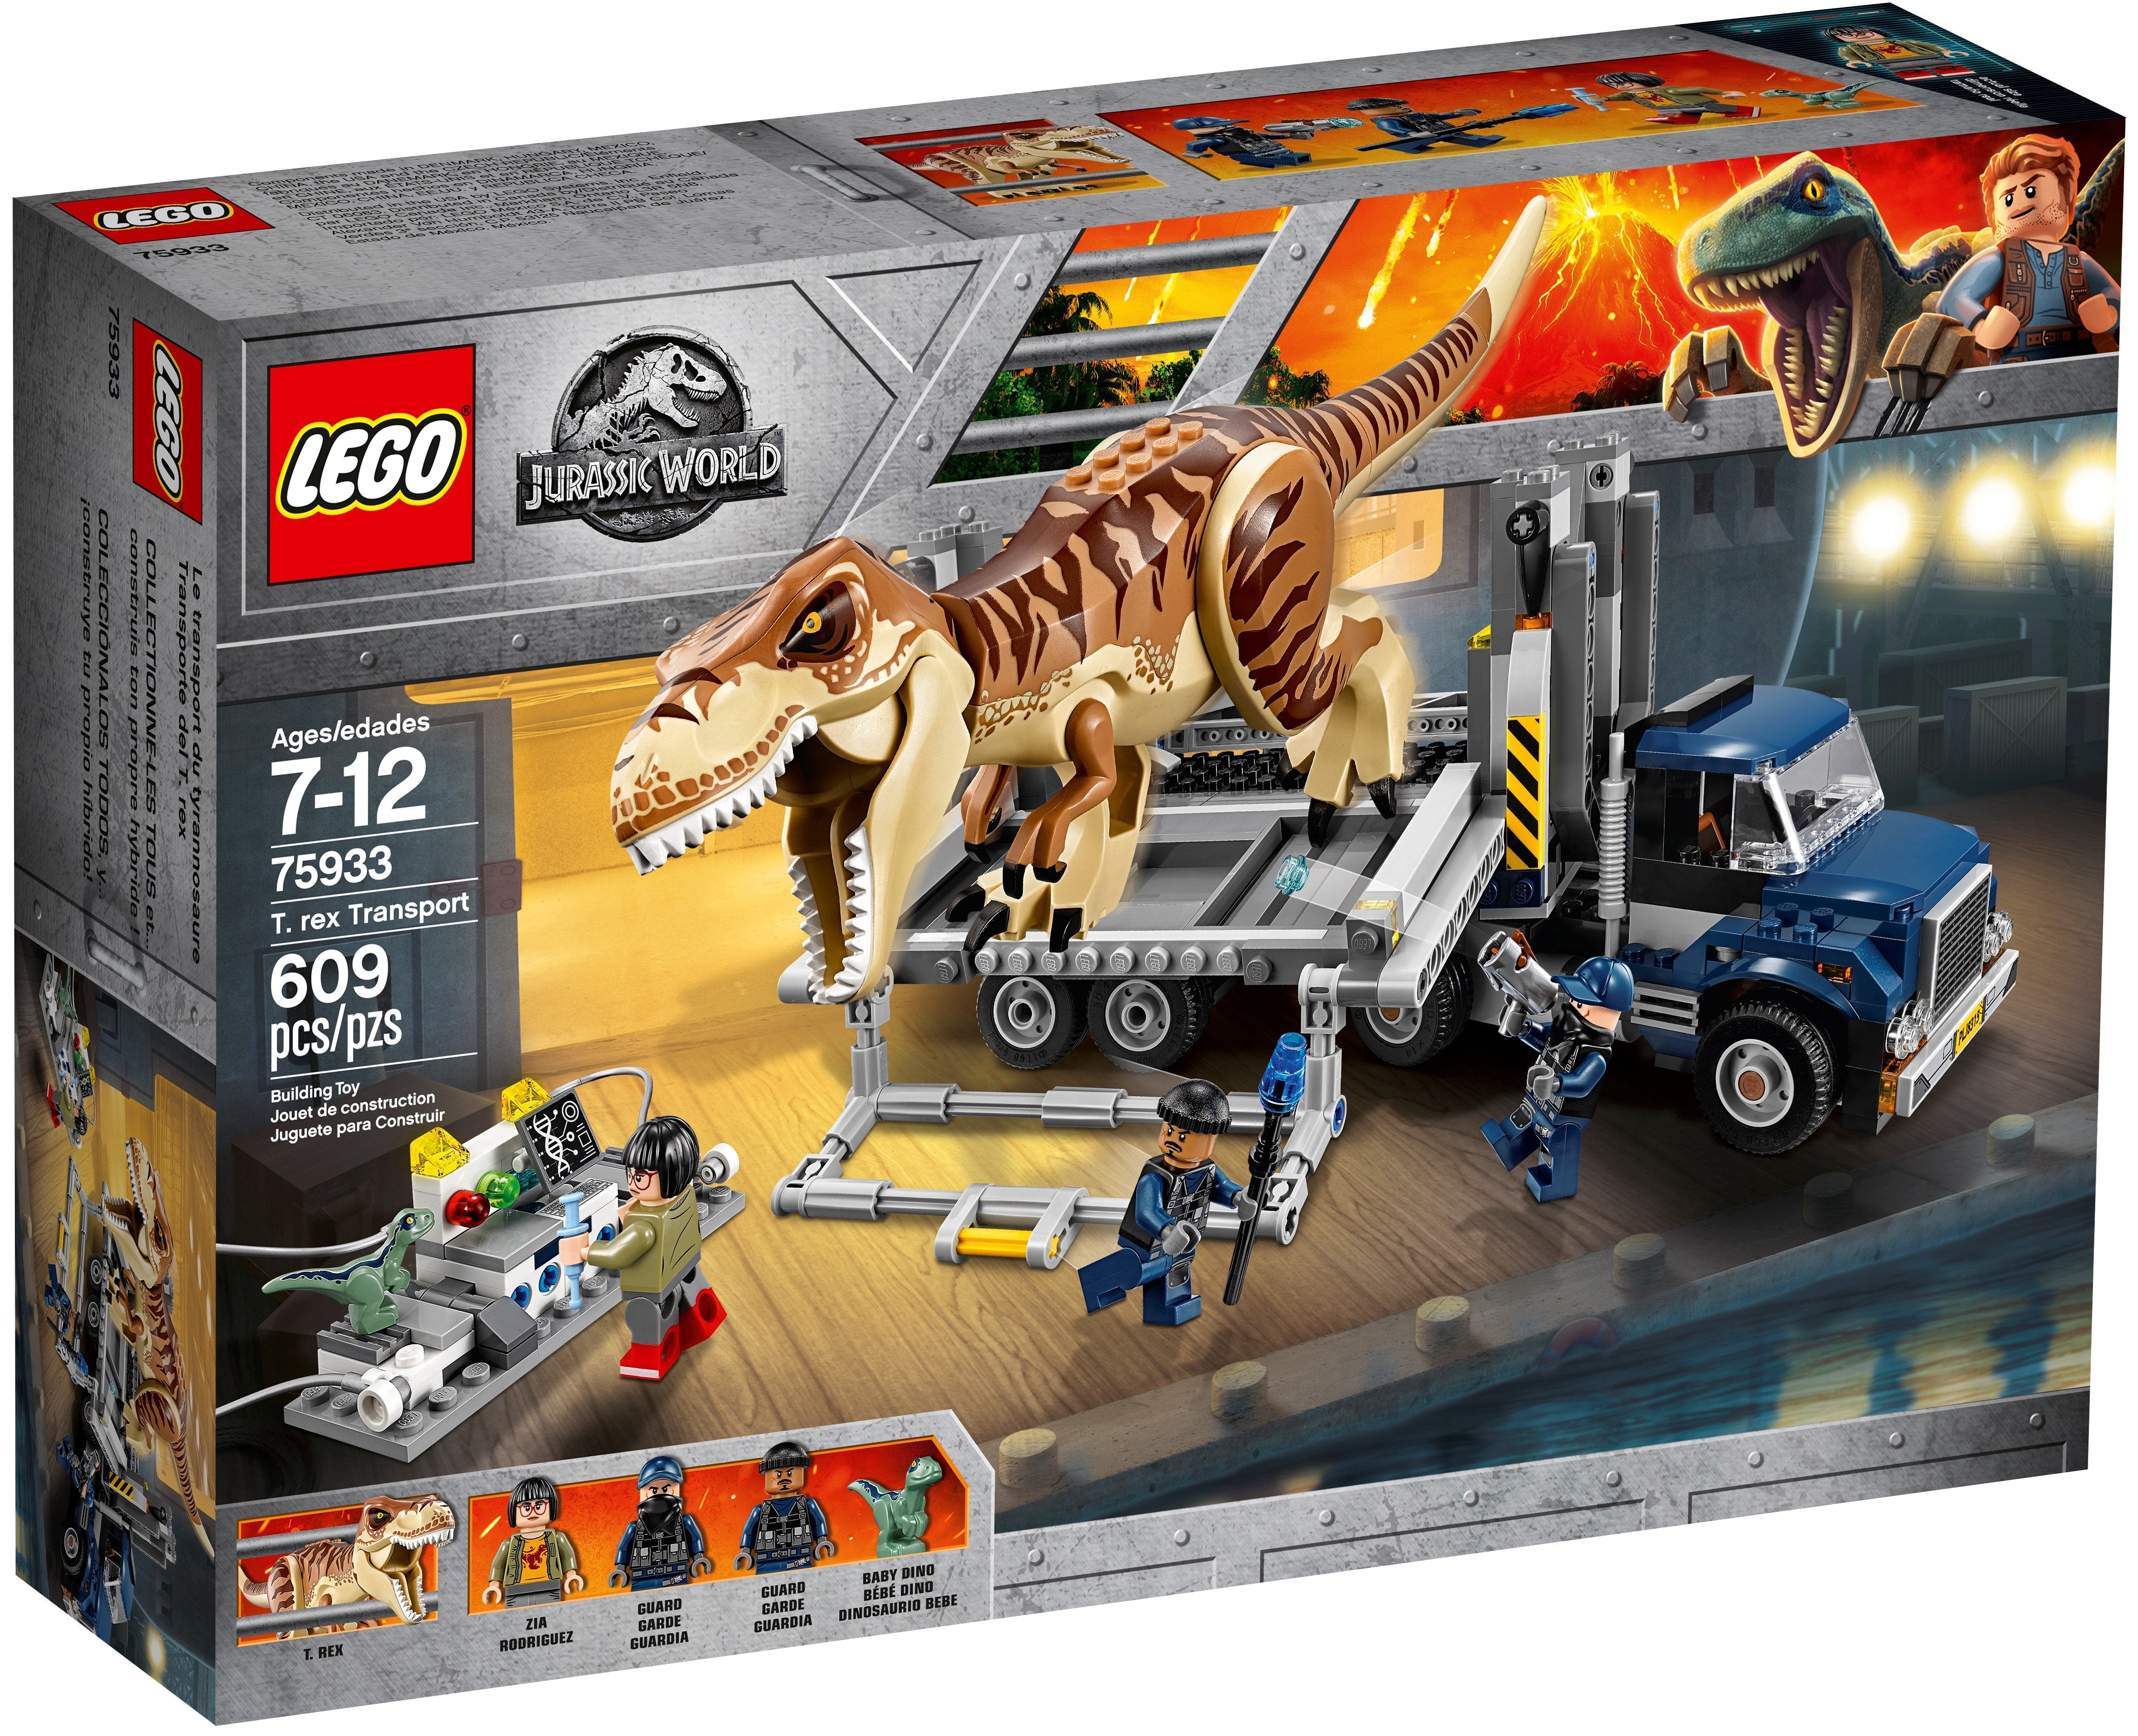 LEGO Jurassic World T. rex Transport (75933) - im GOLDSTIEN.SHOP verfügbar mit Gratisversand ab Schweizer Lager! (5702016110296)